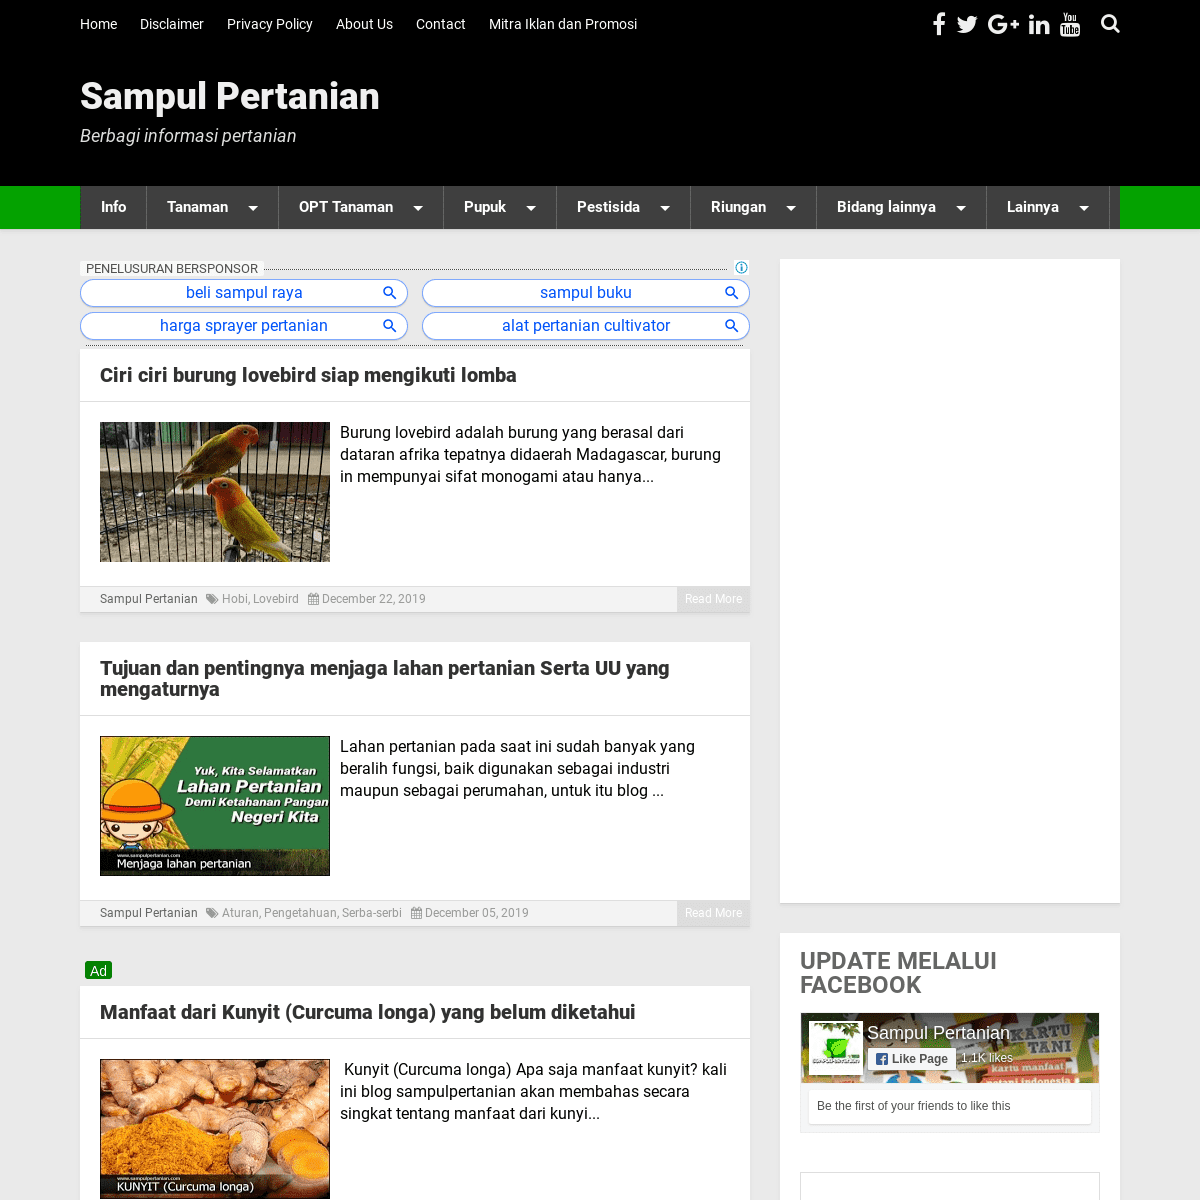 A complete backup of sampulpertanian.com